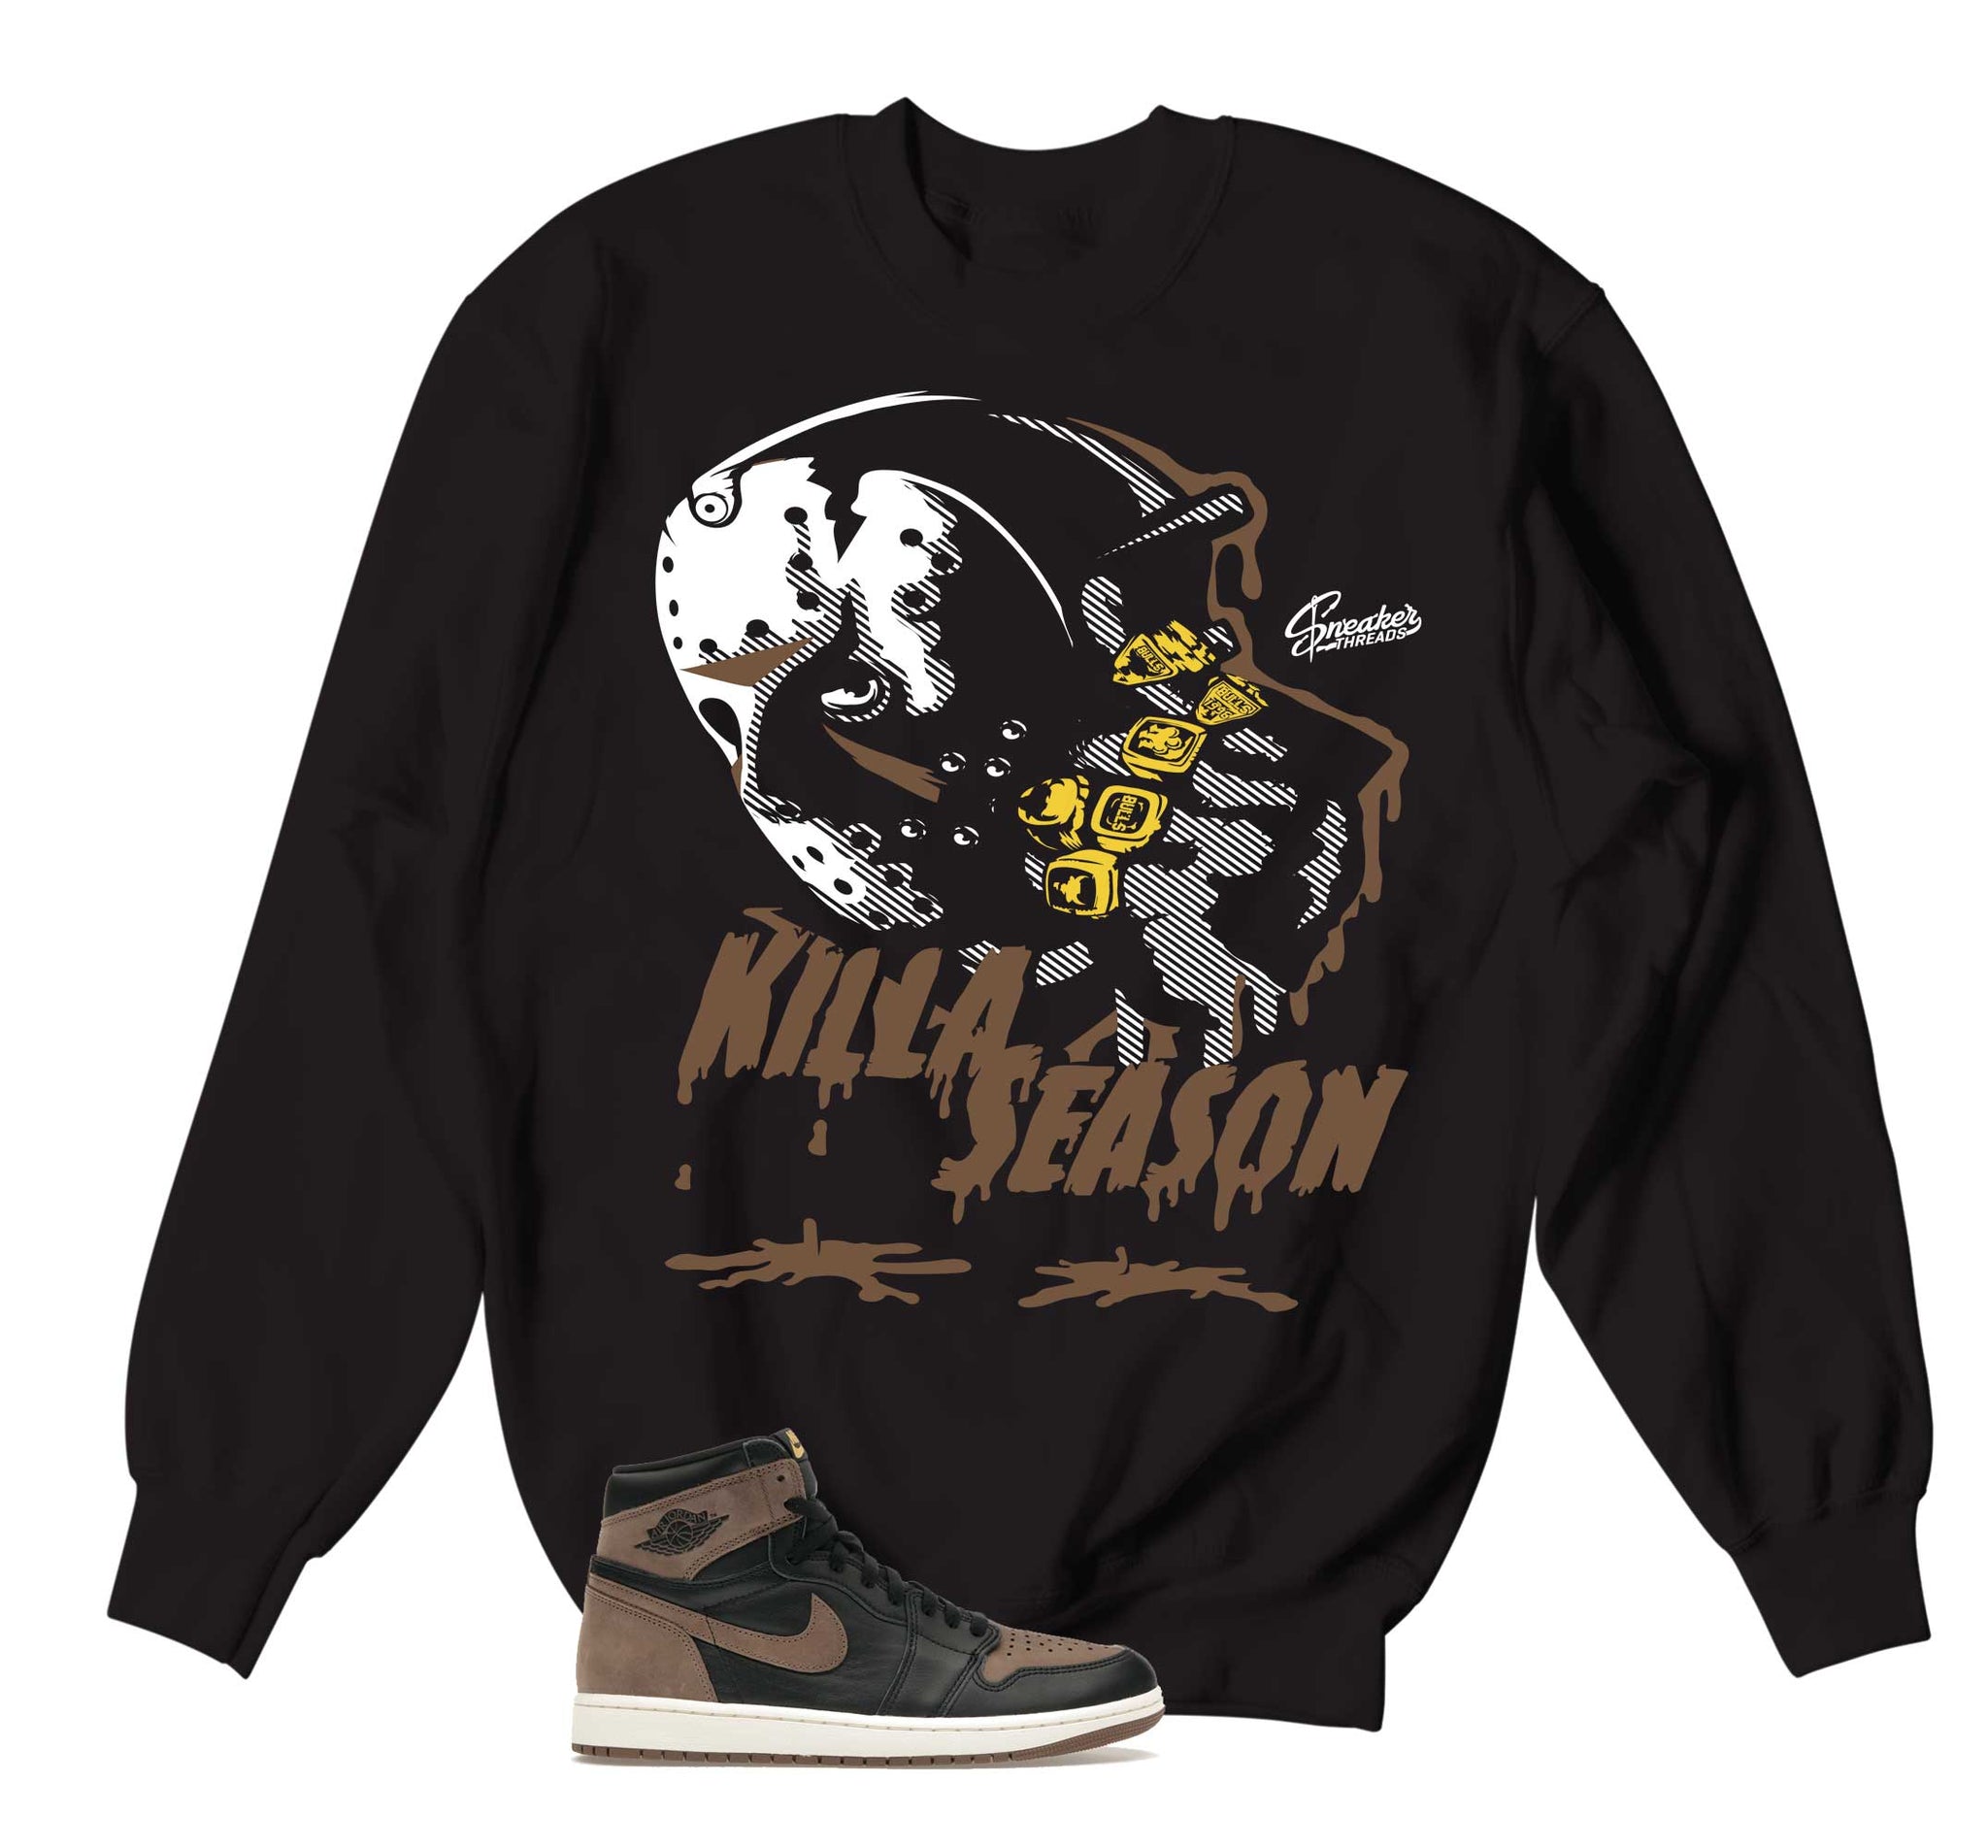 Retro 1 Palomino Sweater - Killa Season - Black